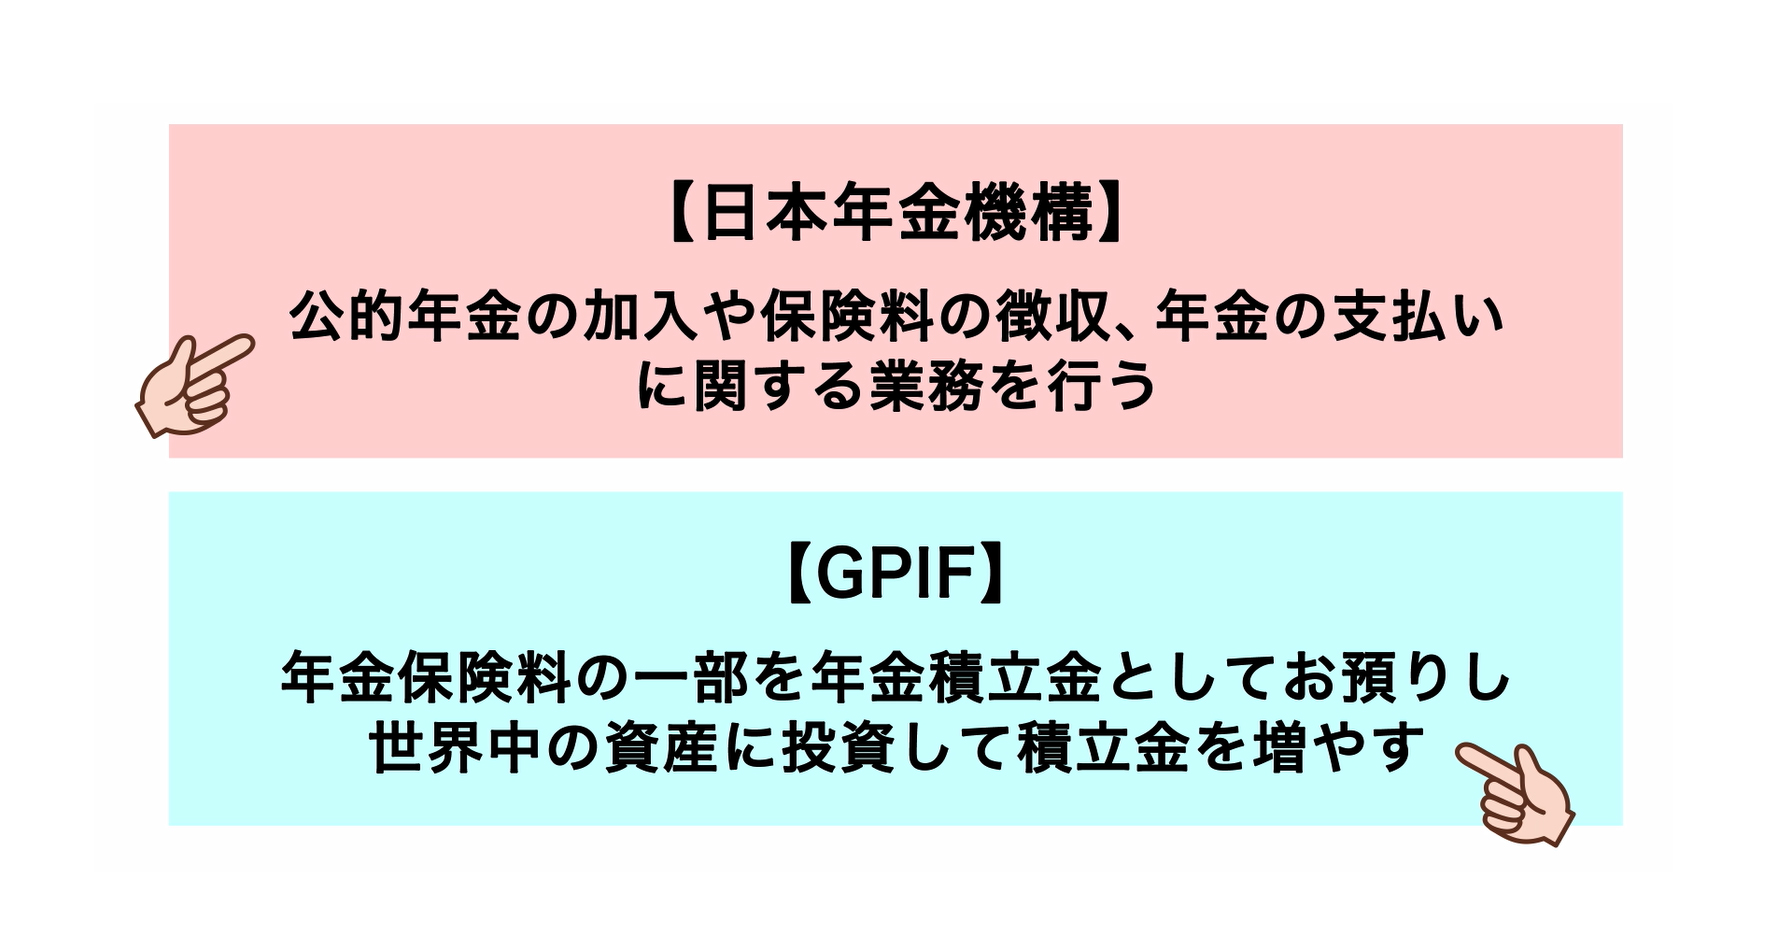 GPIFと日本年金機構との違い